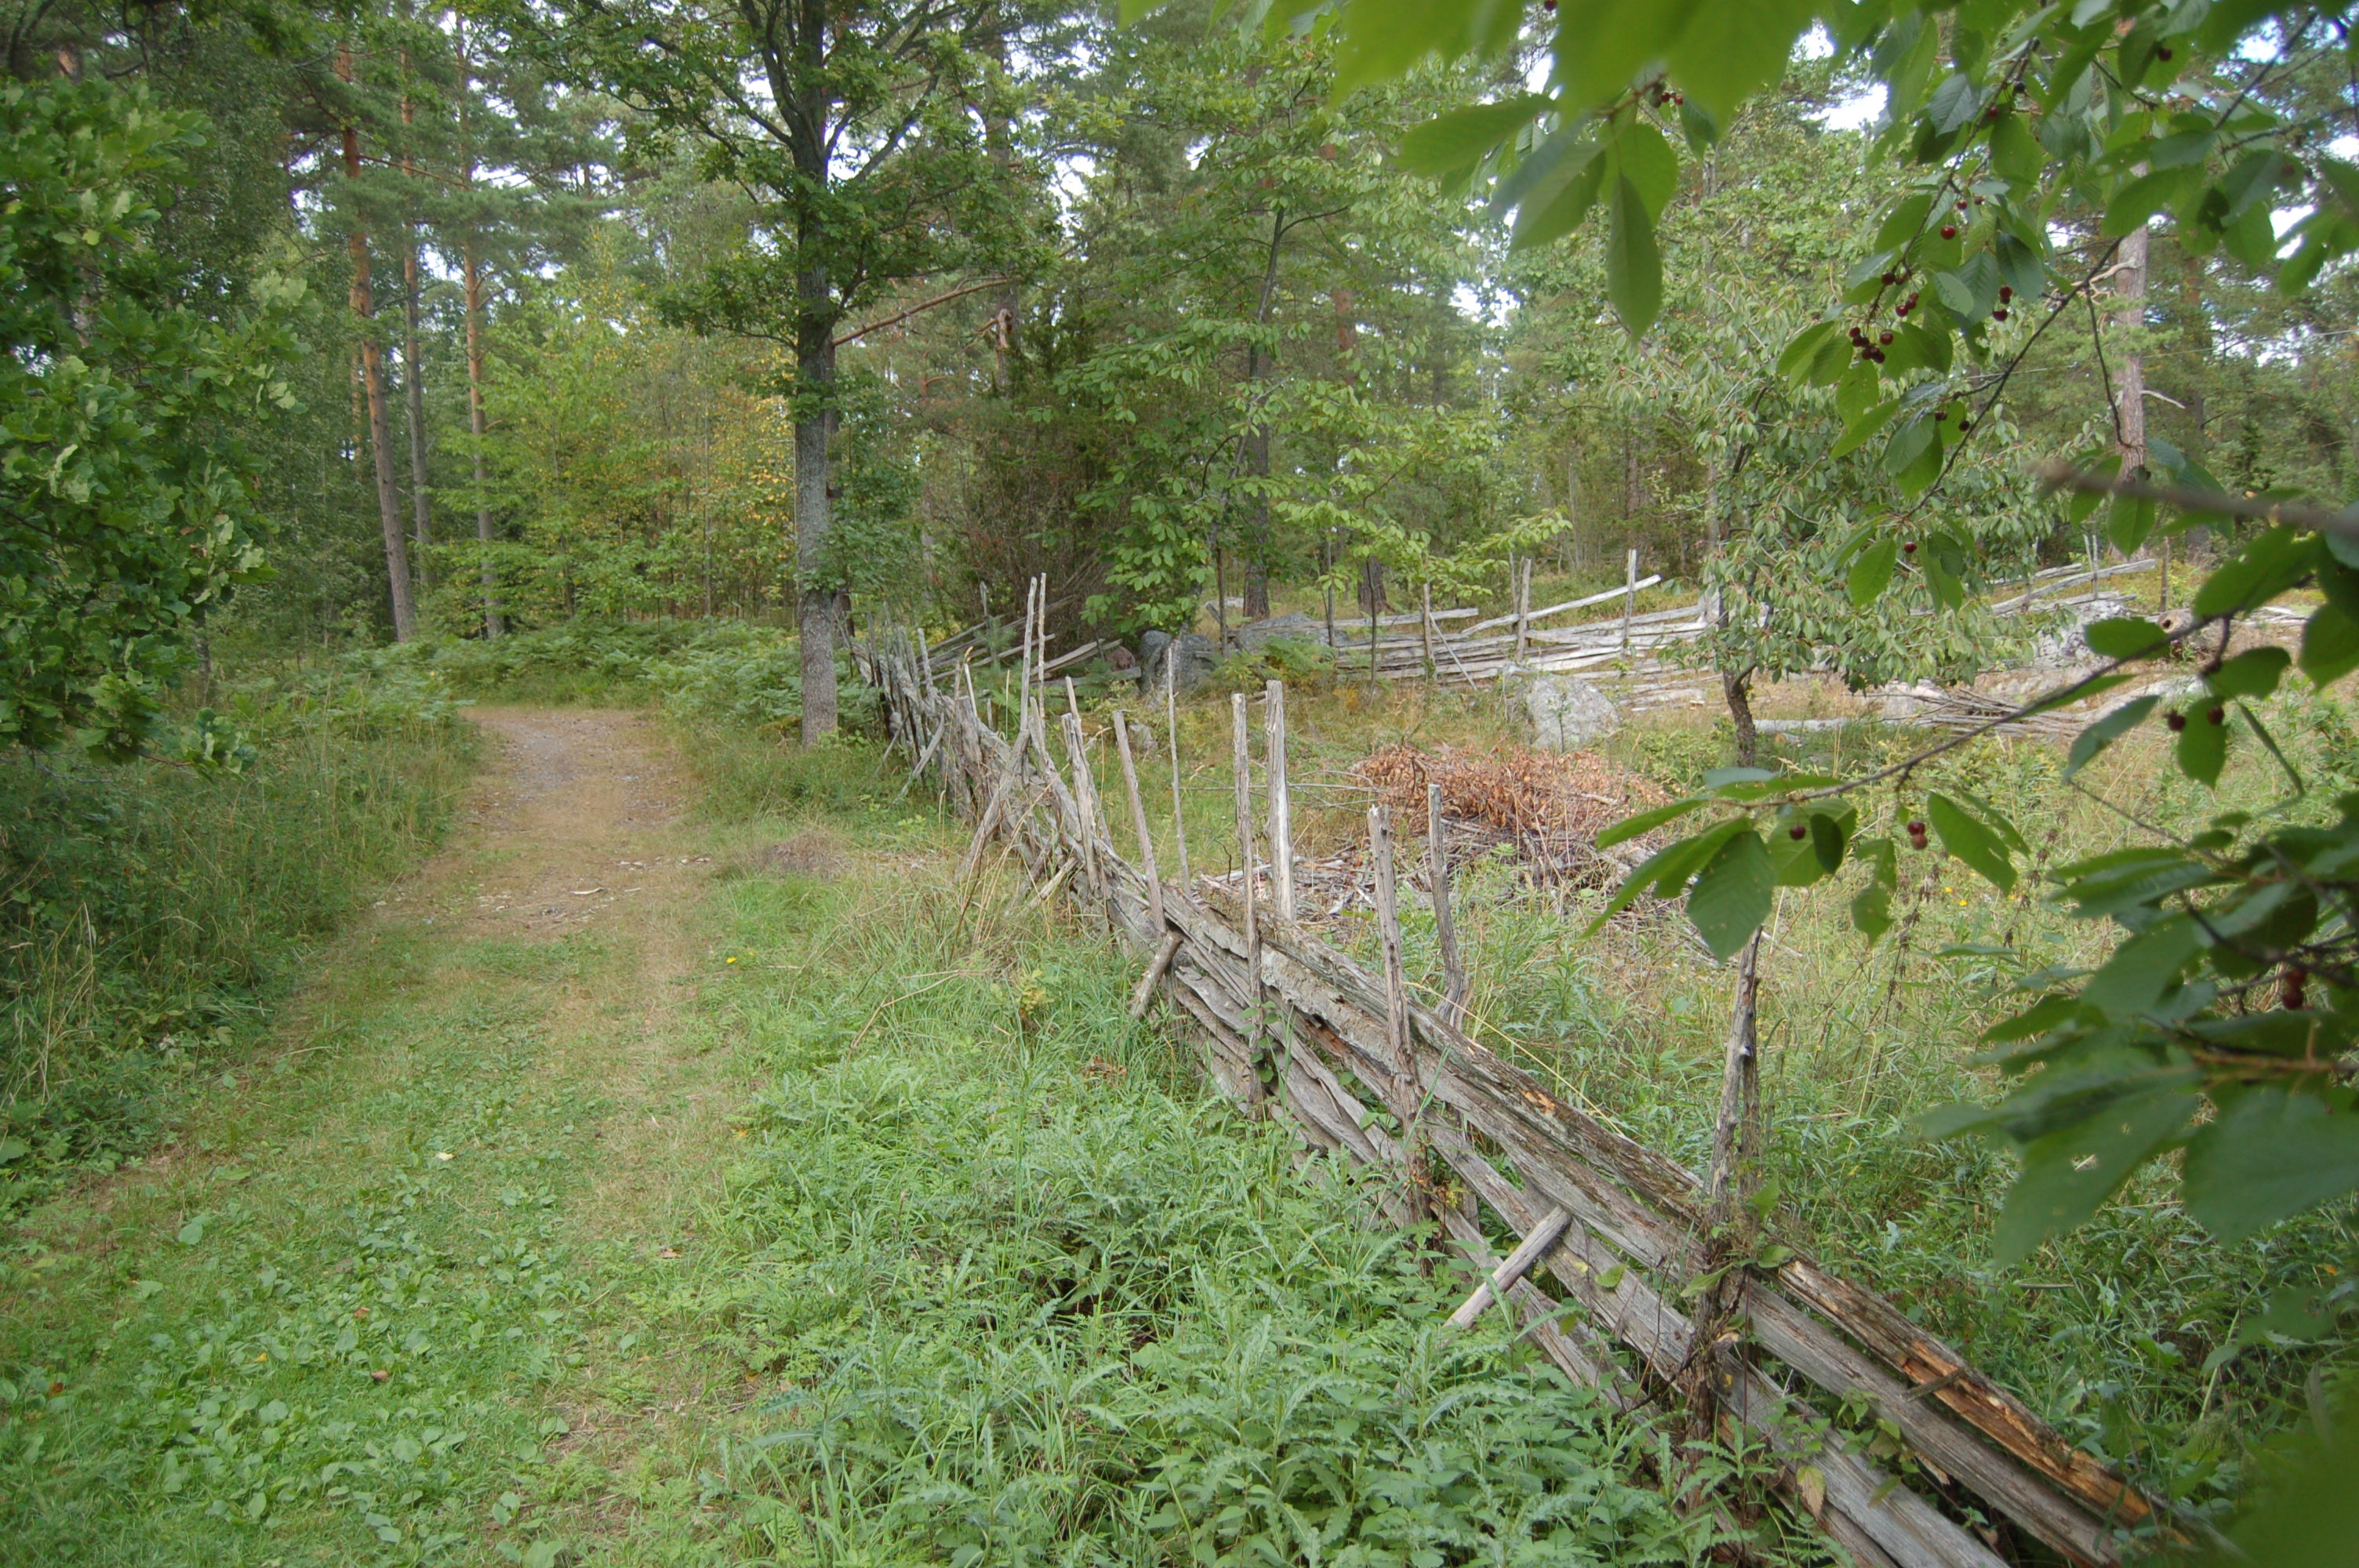 På Svartsö finns många typer av landskapselement som vittnar om ett mångårigt brukande av landskapet. Östra Svartsö karaktäriseras av äldre brukningsvägar, stengärdesgårdar och även bevarade trägärdesgårdar.